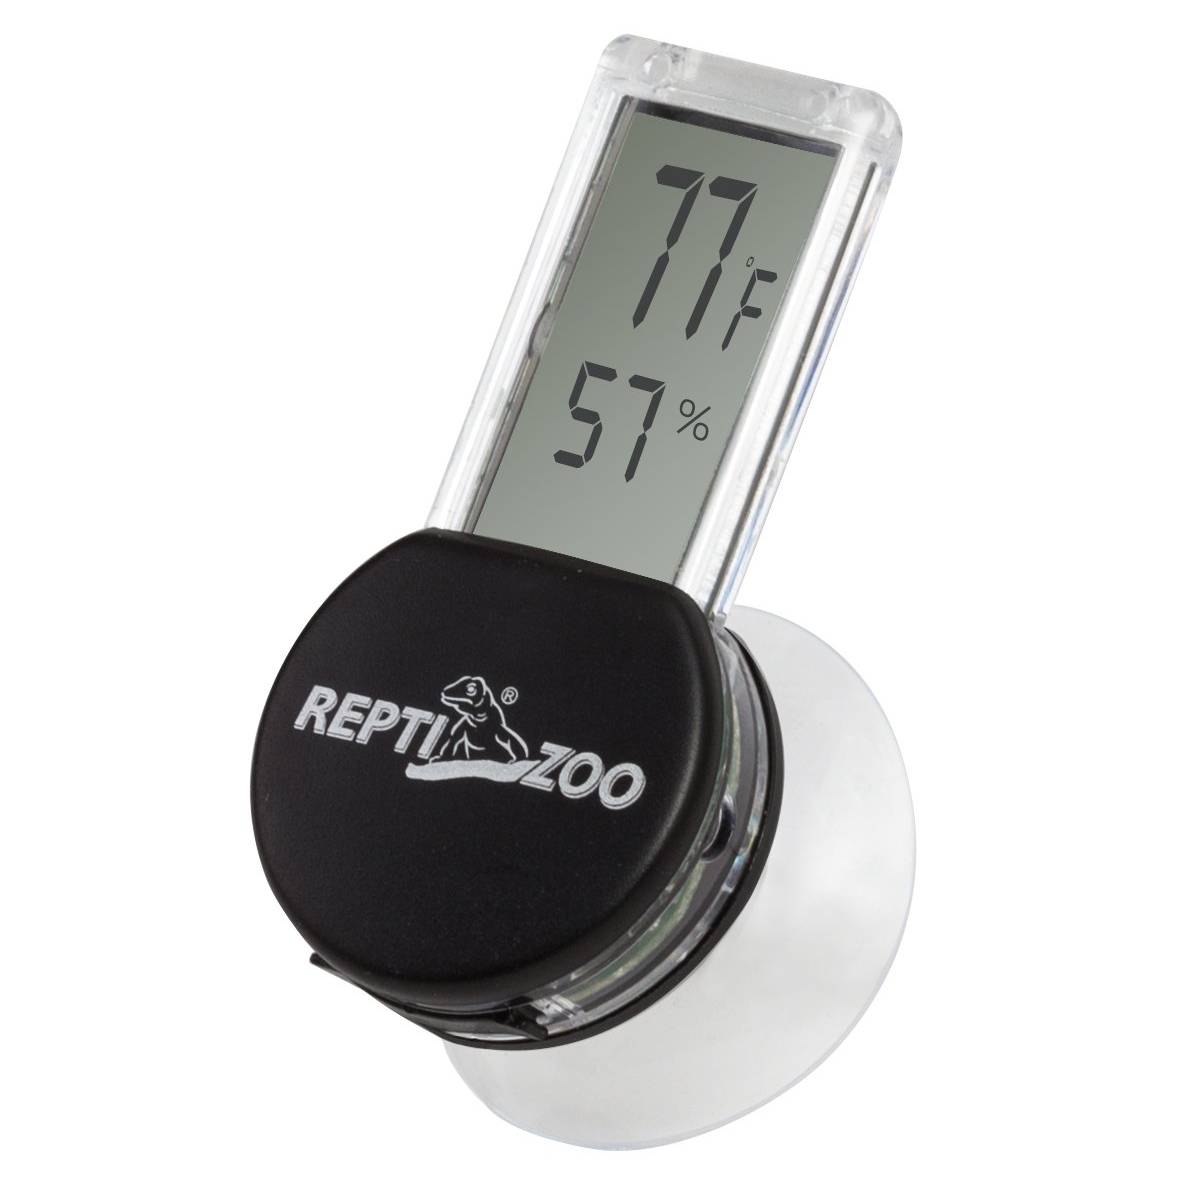 REPTI ZOO Reptile Thermometer Hygrometer